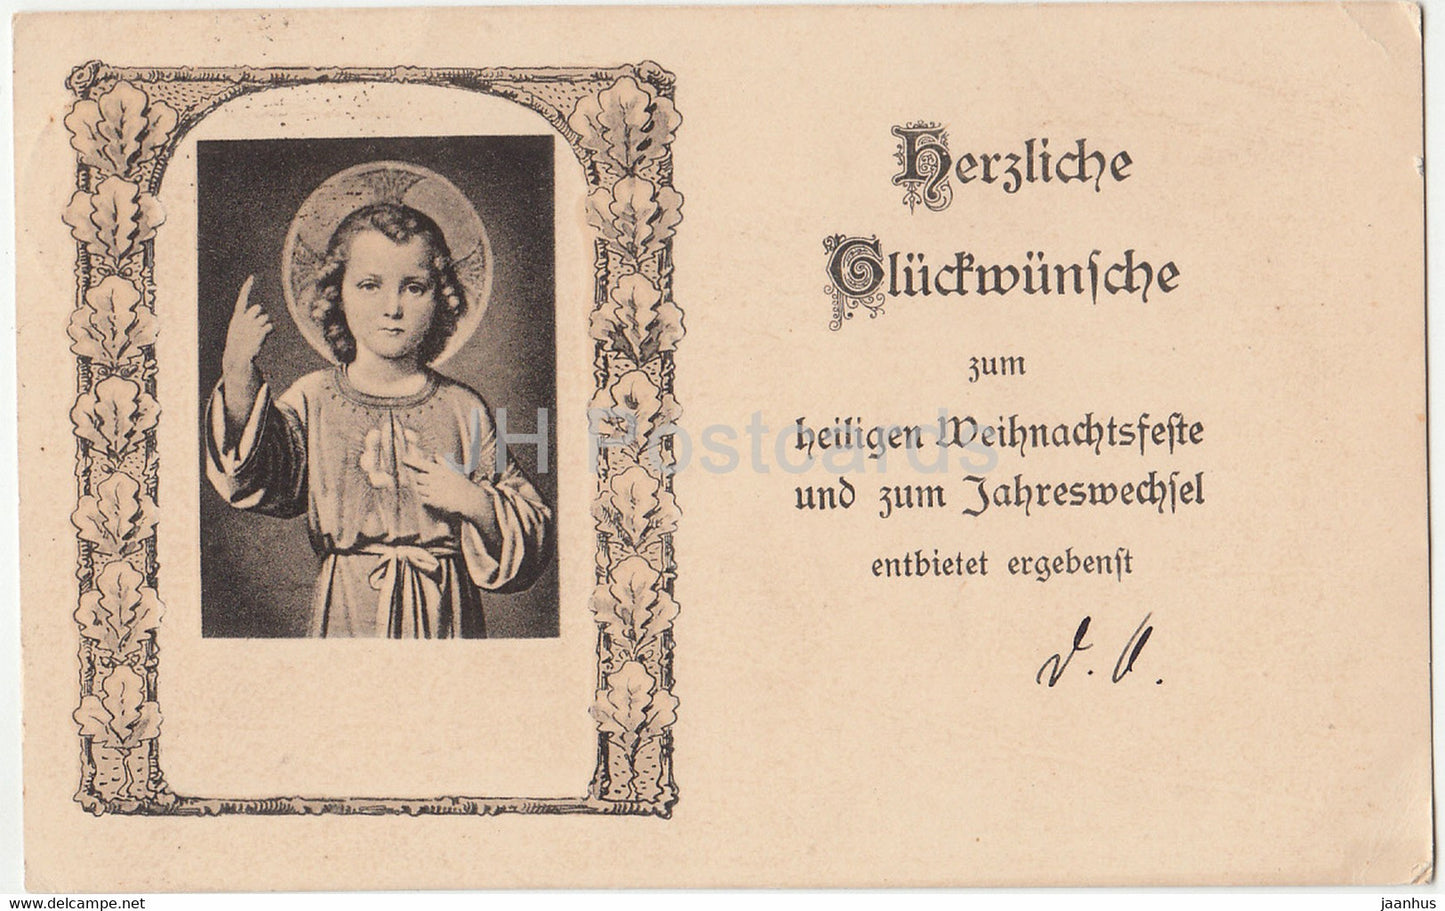 Christmas Greeting Card - Herzliche Gluckwunsche zum Heiligen Weihnachtsfeste - old postcard - 1921 - Germany - used - JH Postcards